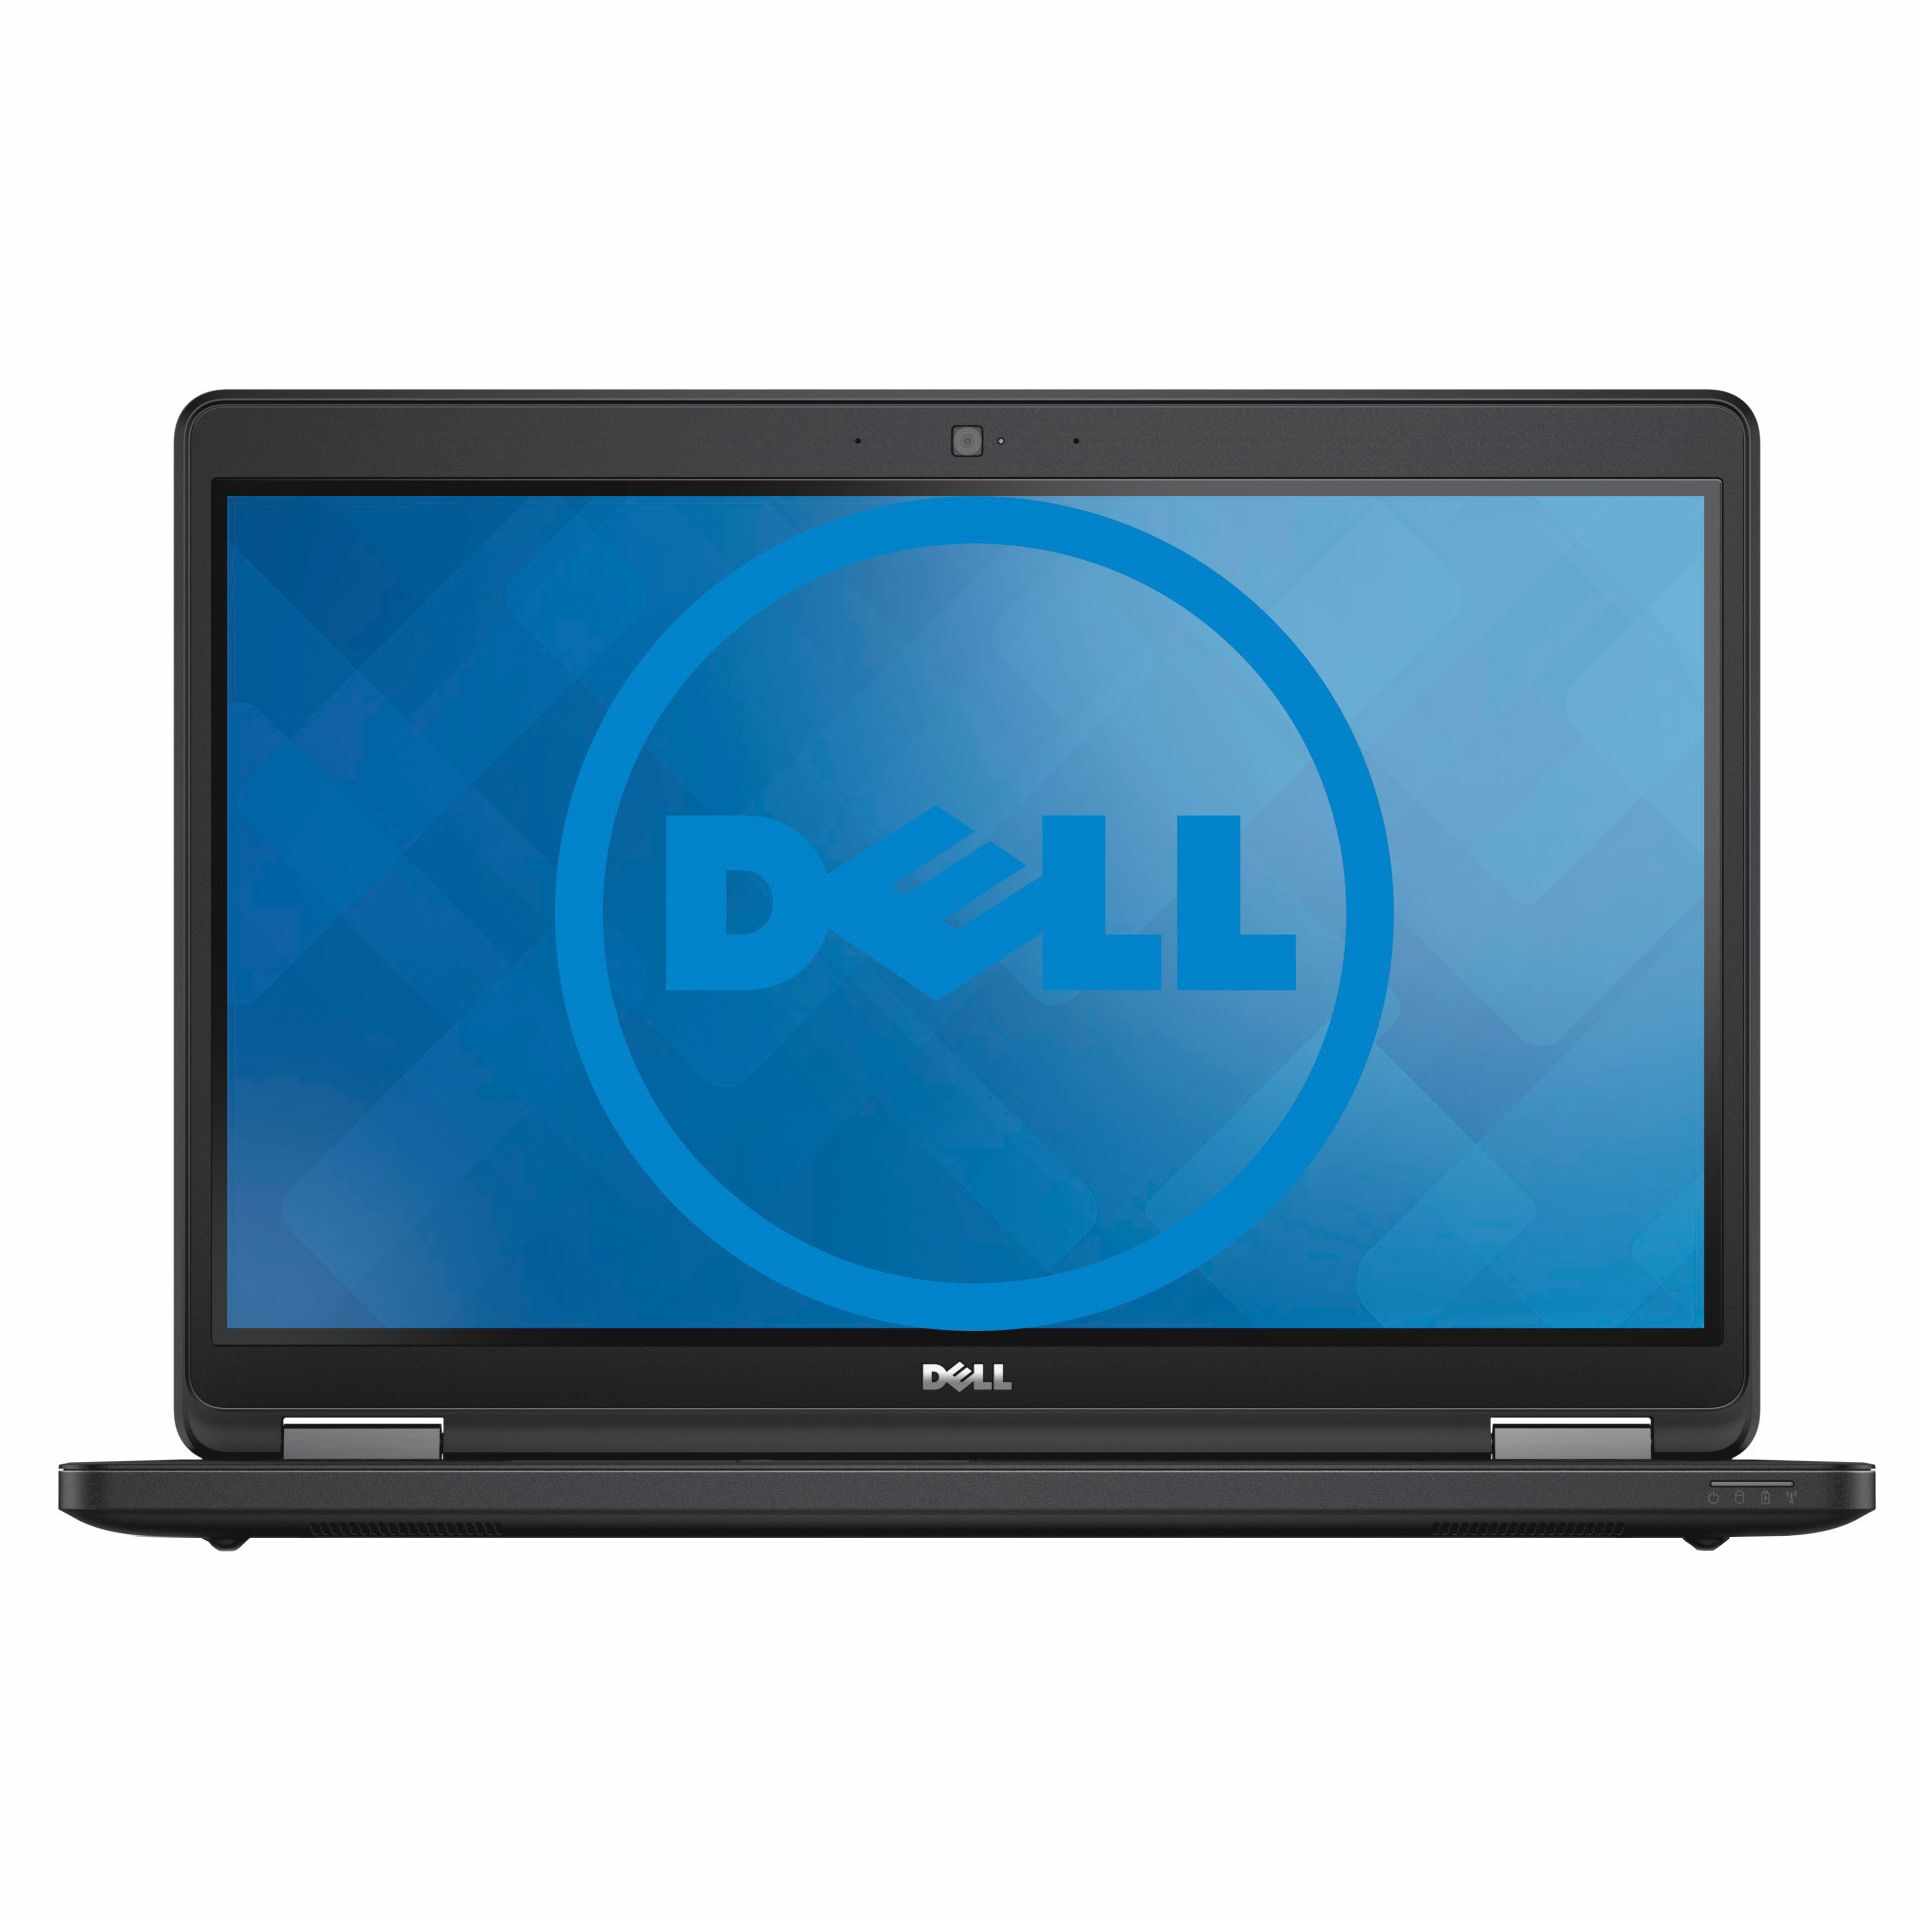 Laptop DELL Latitude E5550, Intel Core i5-4310U 2.00GHz, 8GB DDR3, 500GB SATA, 15.6 Inch Full HD, Webcam, Tastatura Numerica, Grad B